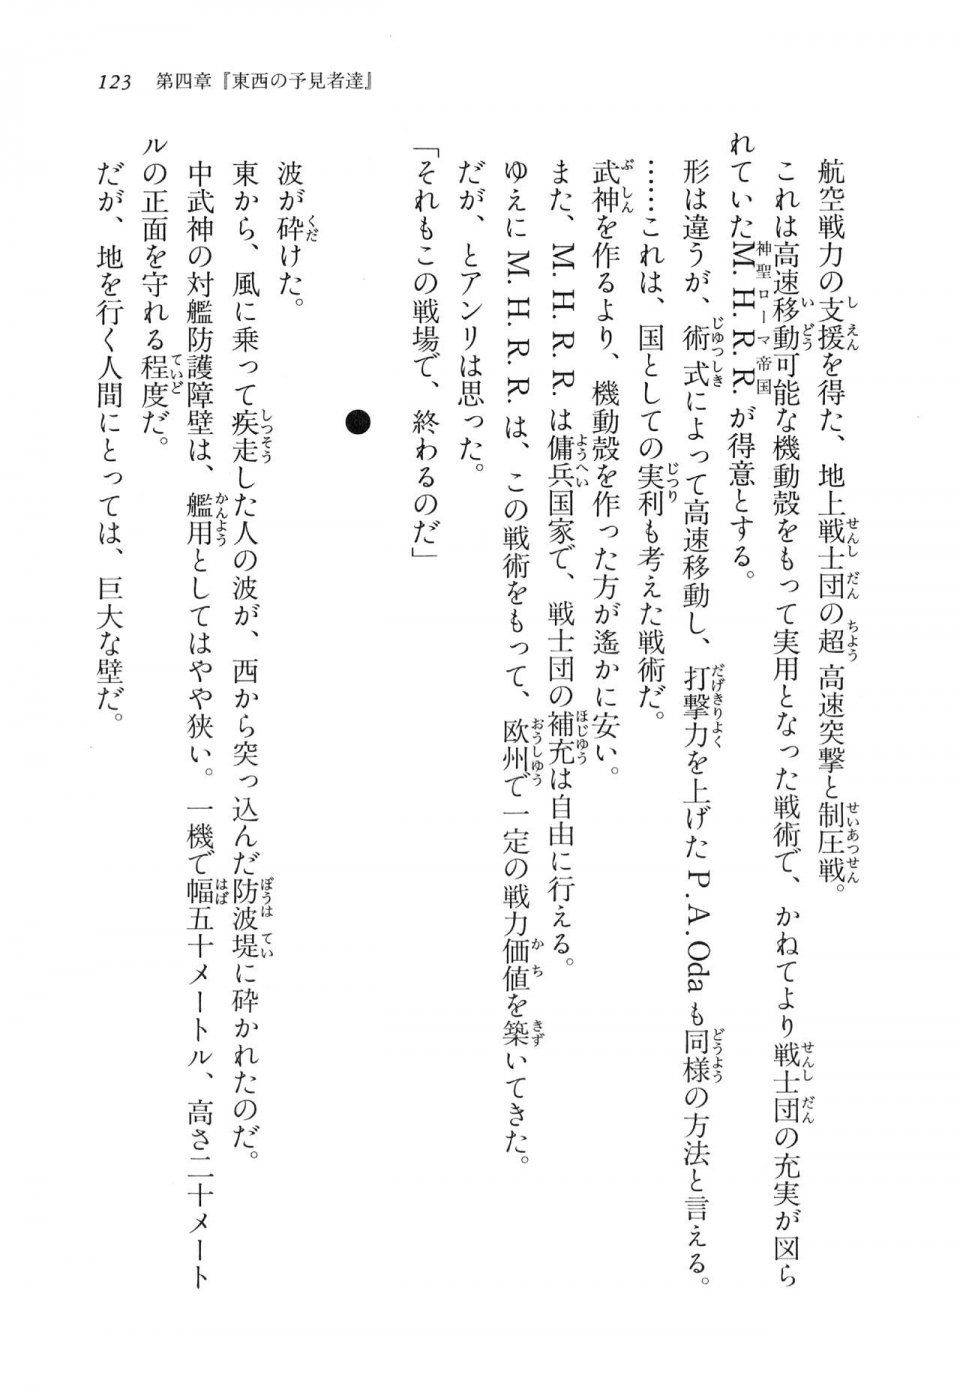 Kyoukai Senjou no Horizon LN Vol 11(5A) - Photo #123